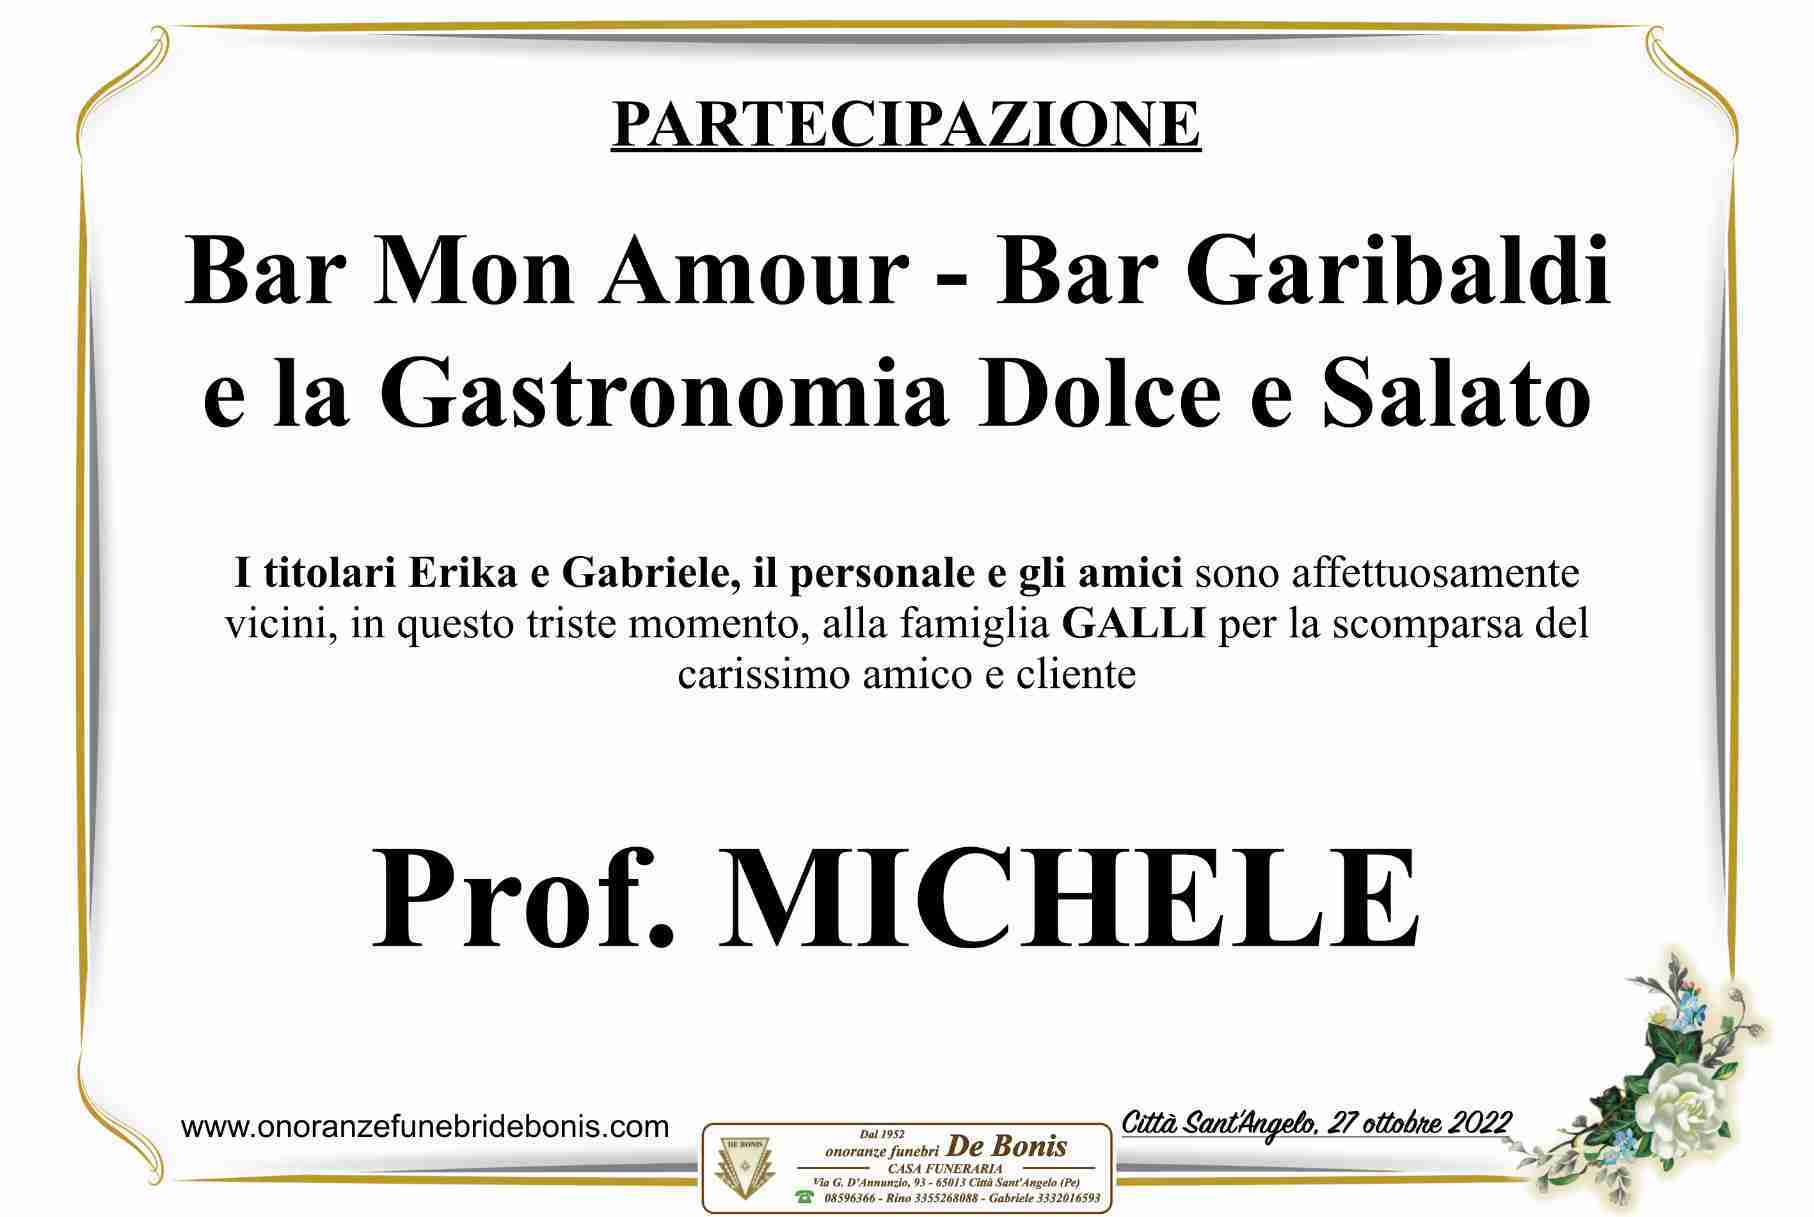 Michele Galli